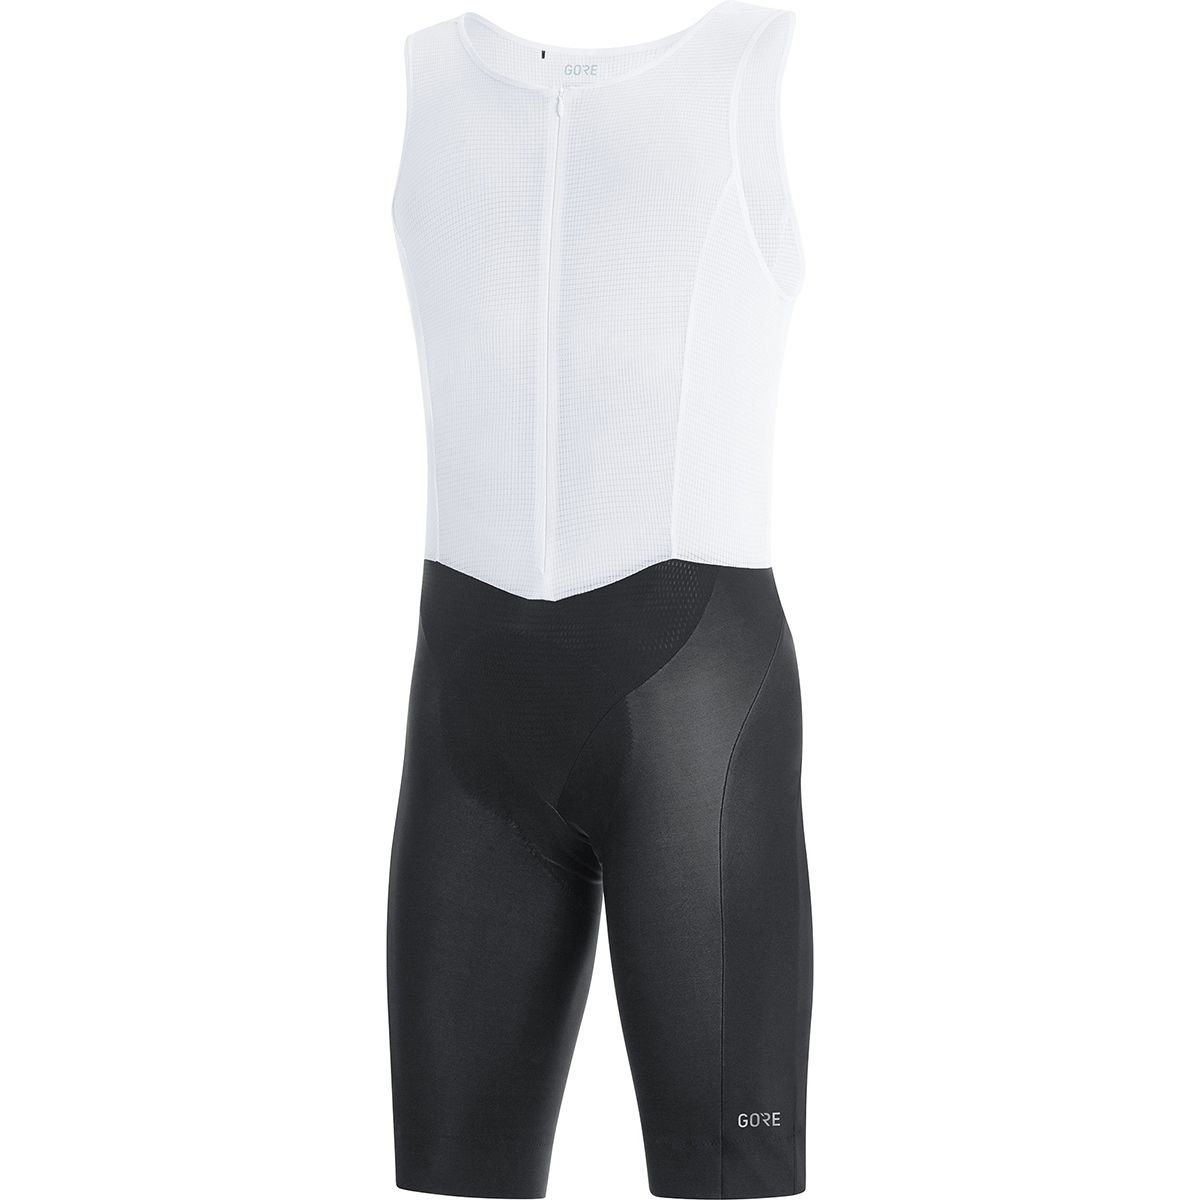 Gore Wear C7 Gore Windstopper Bib Shorts+ - Men's